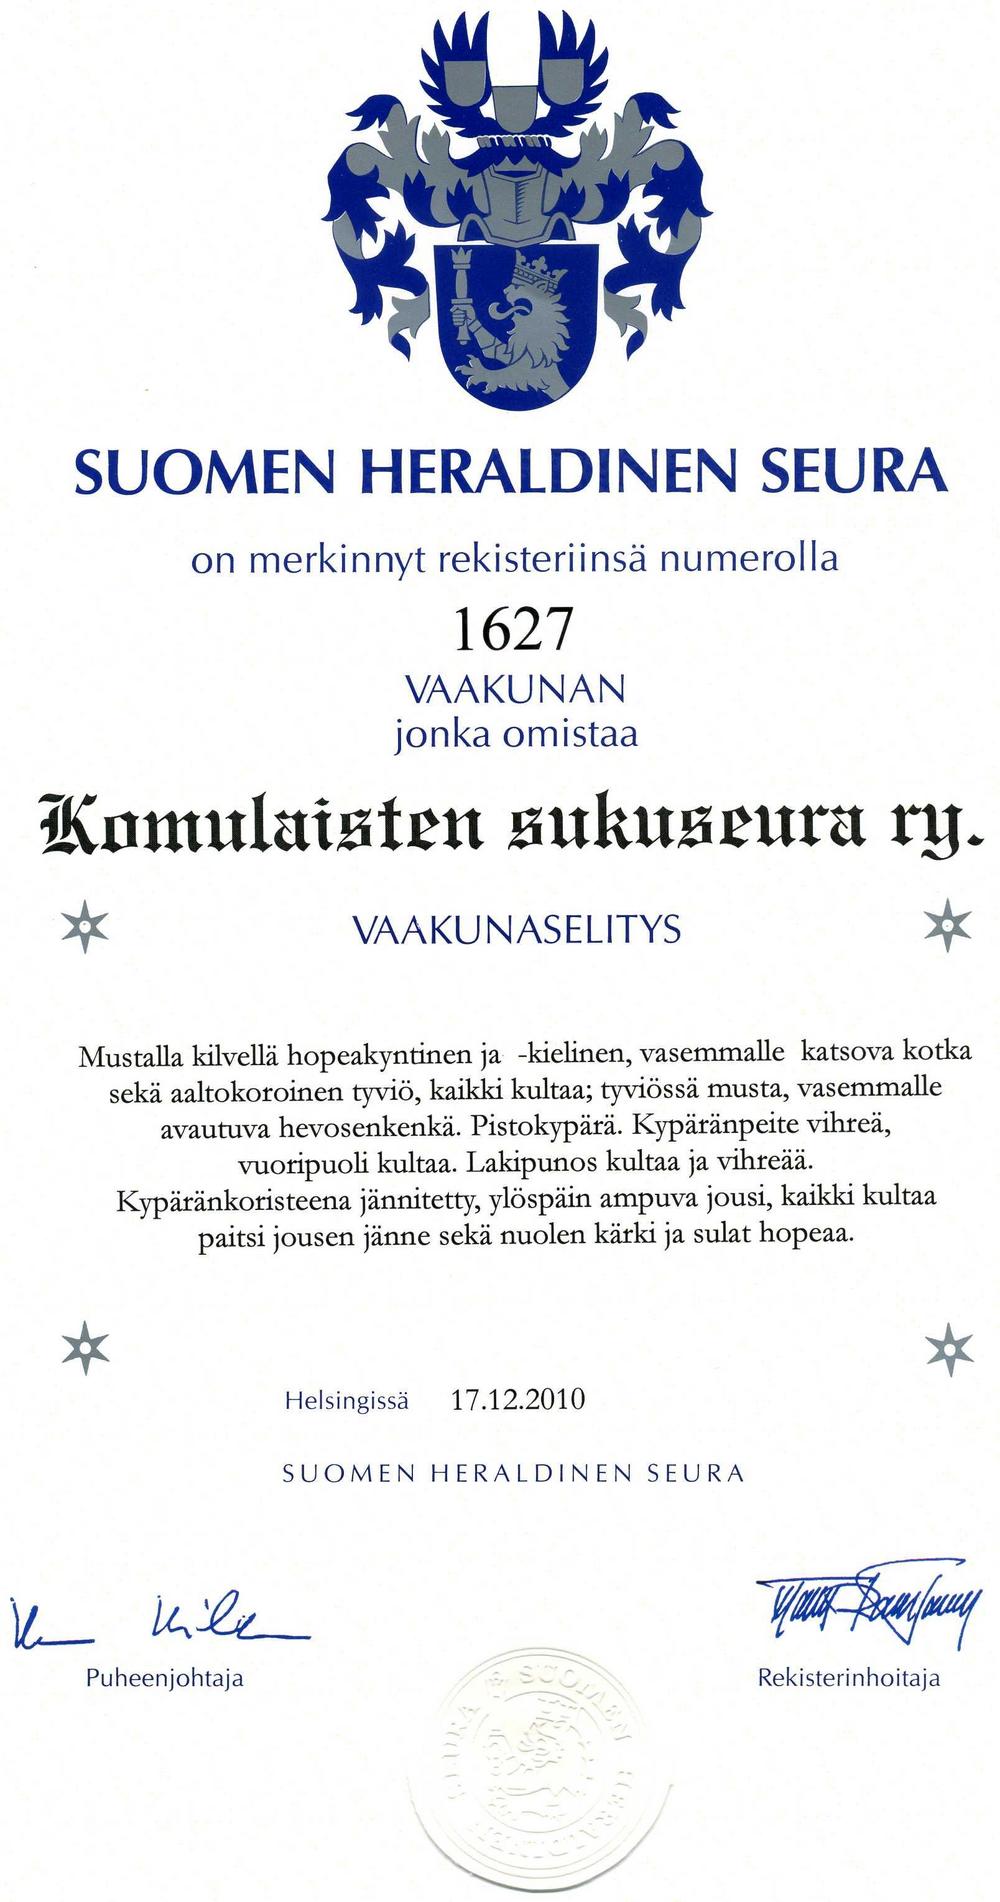 Suomen heraldisen seuran myöntämä vaakunadiplomi.